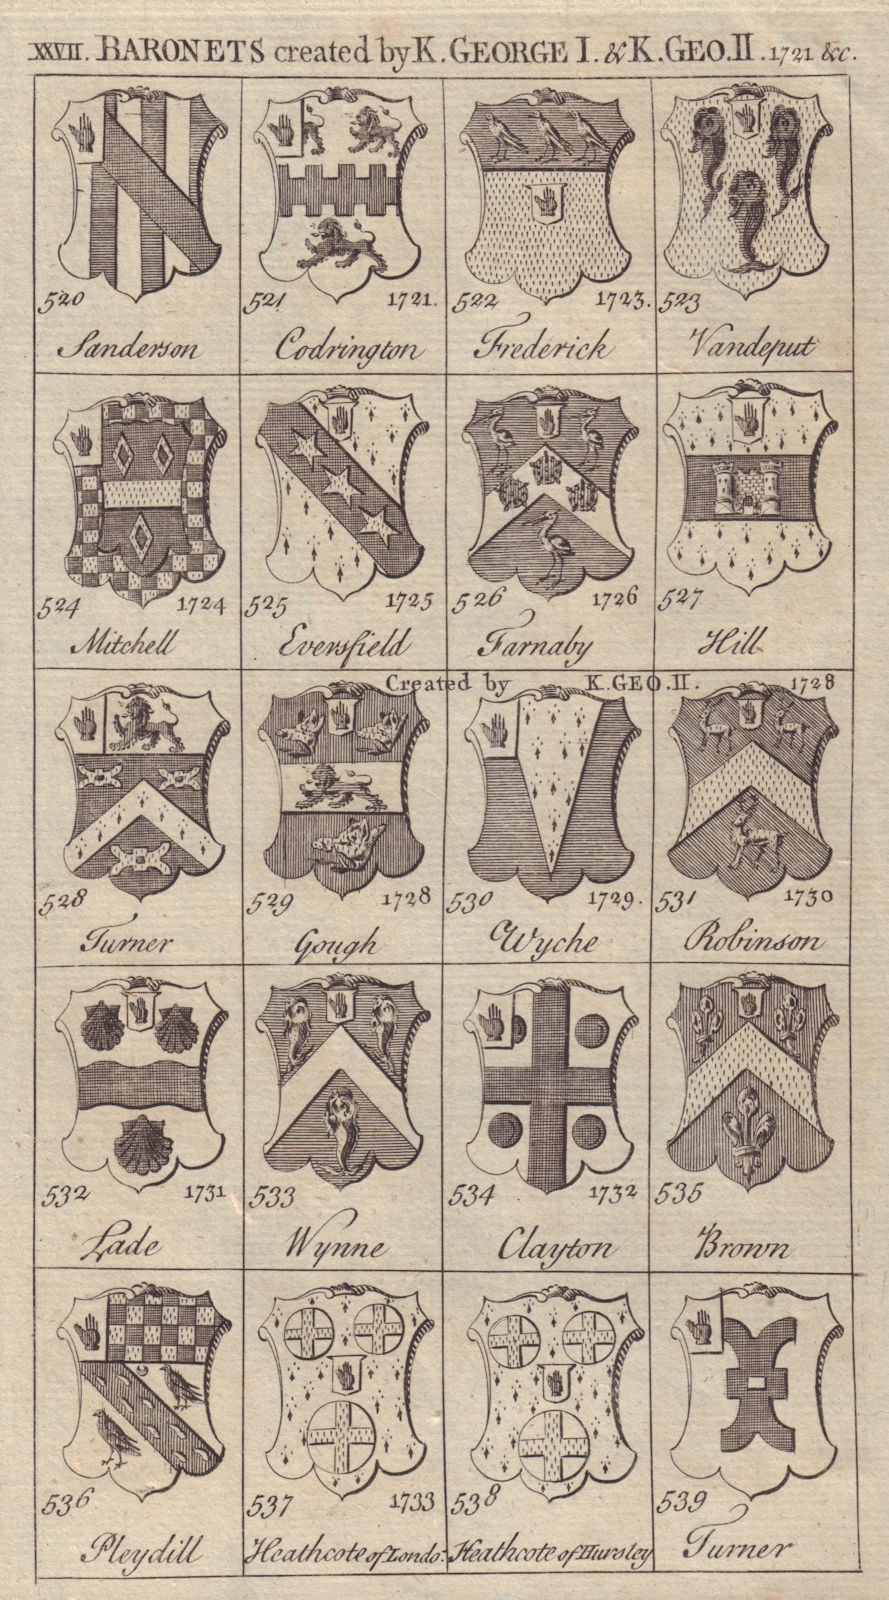 George I/II Baronets 1721 Mitchell Farnaby Turner Gough Wyche Lade Wynne… 1753